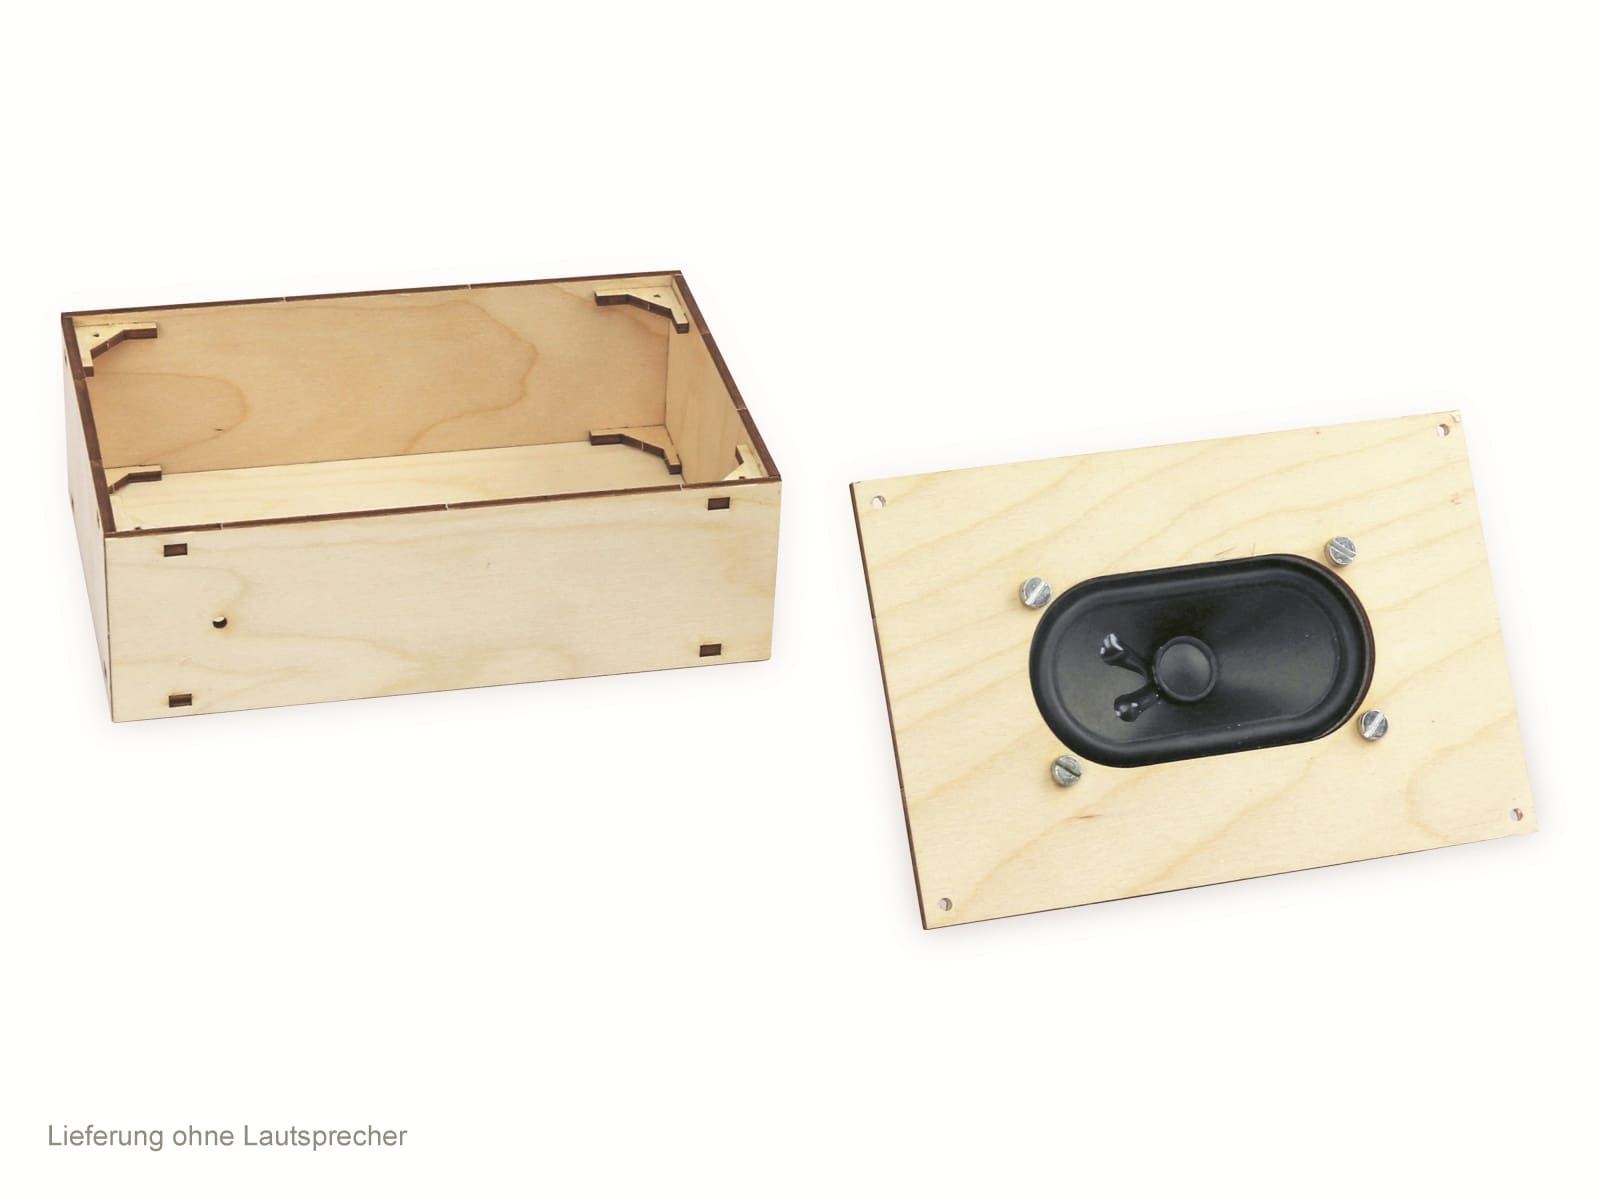 SOL-EXPERT Holzboxbausatz für Lautsprecher BN 390154, 150 x 100 x 50 mm